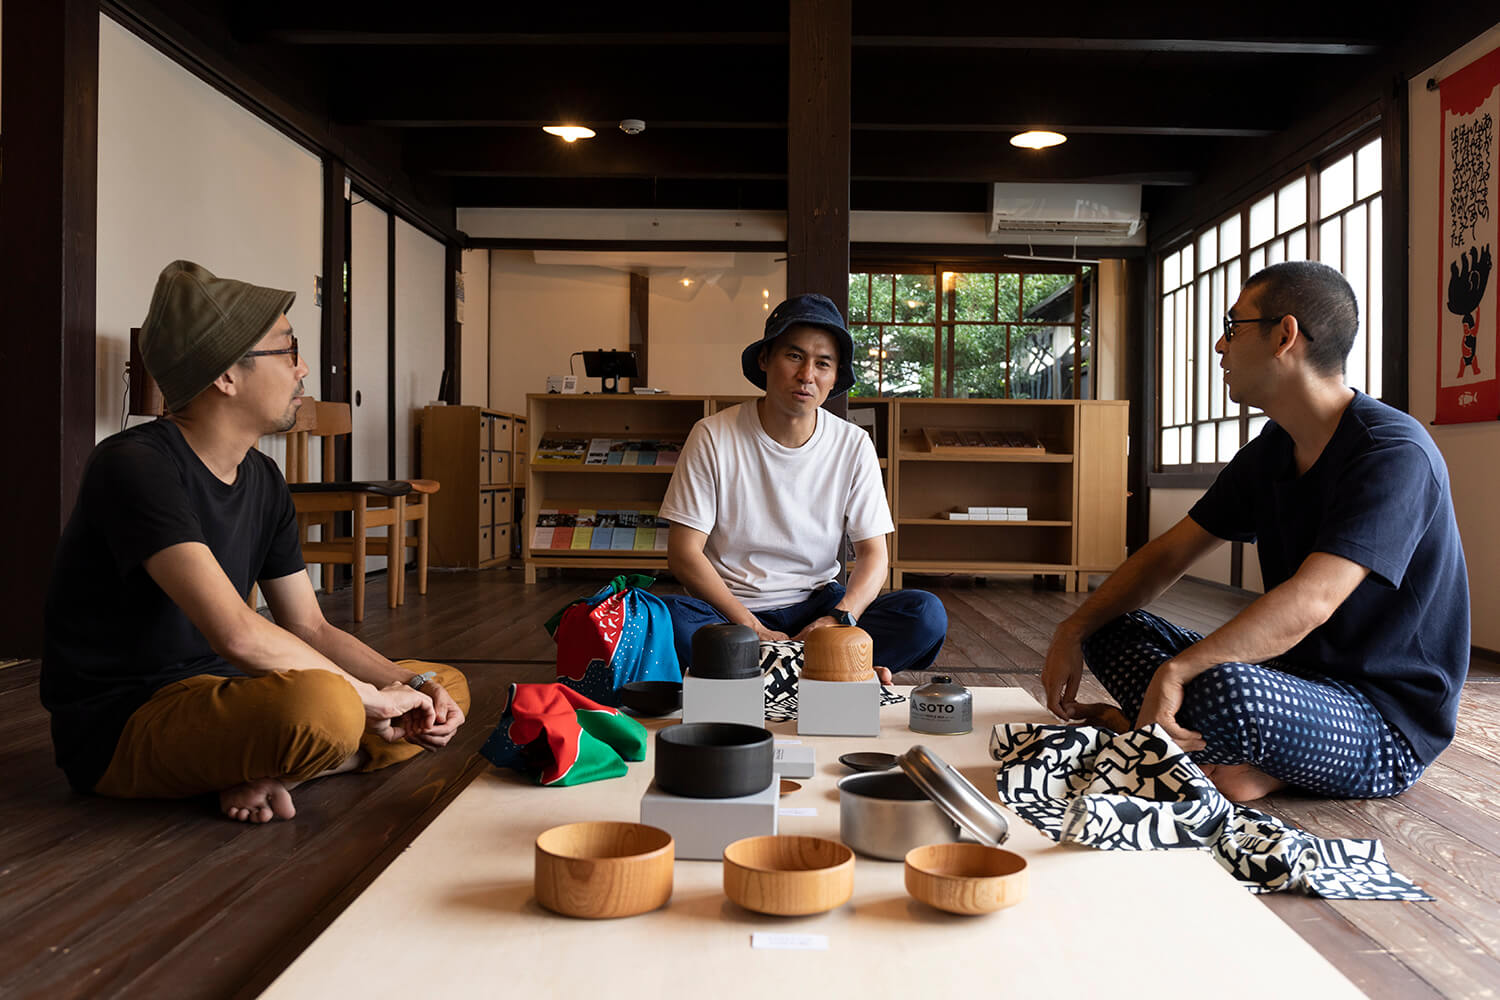 山道具と日本のものづくりが出合い、新たな地域文化が生まれる